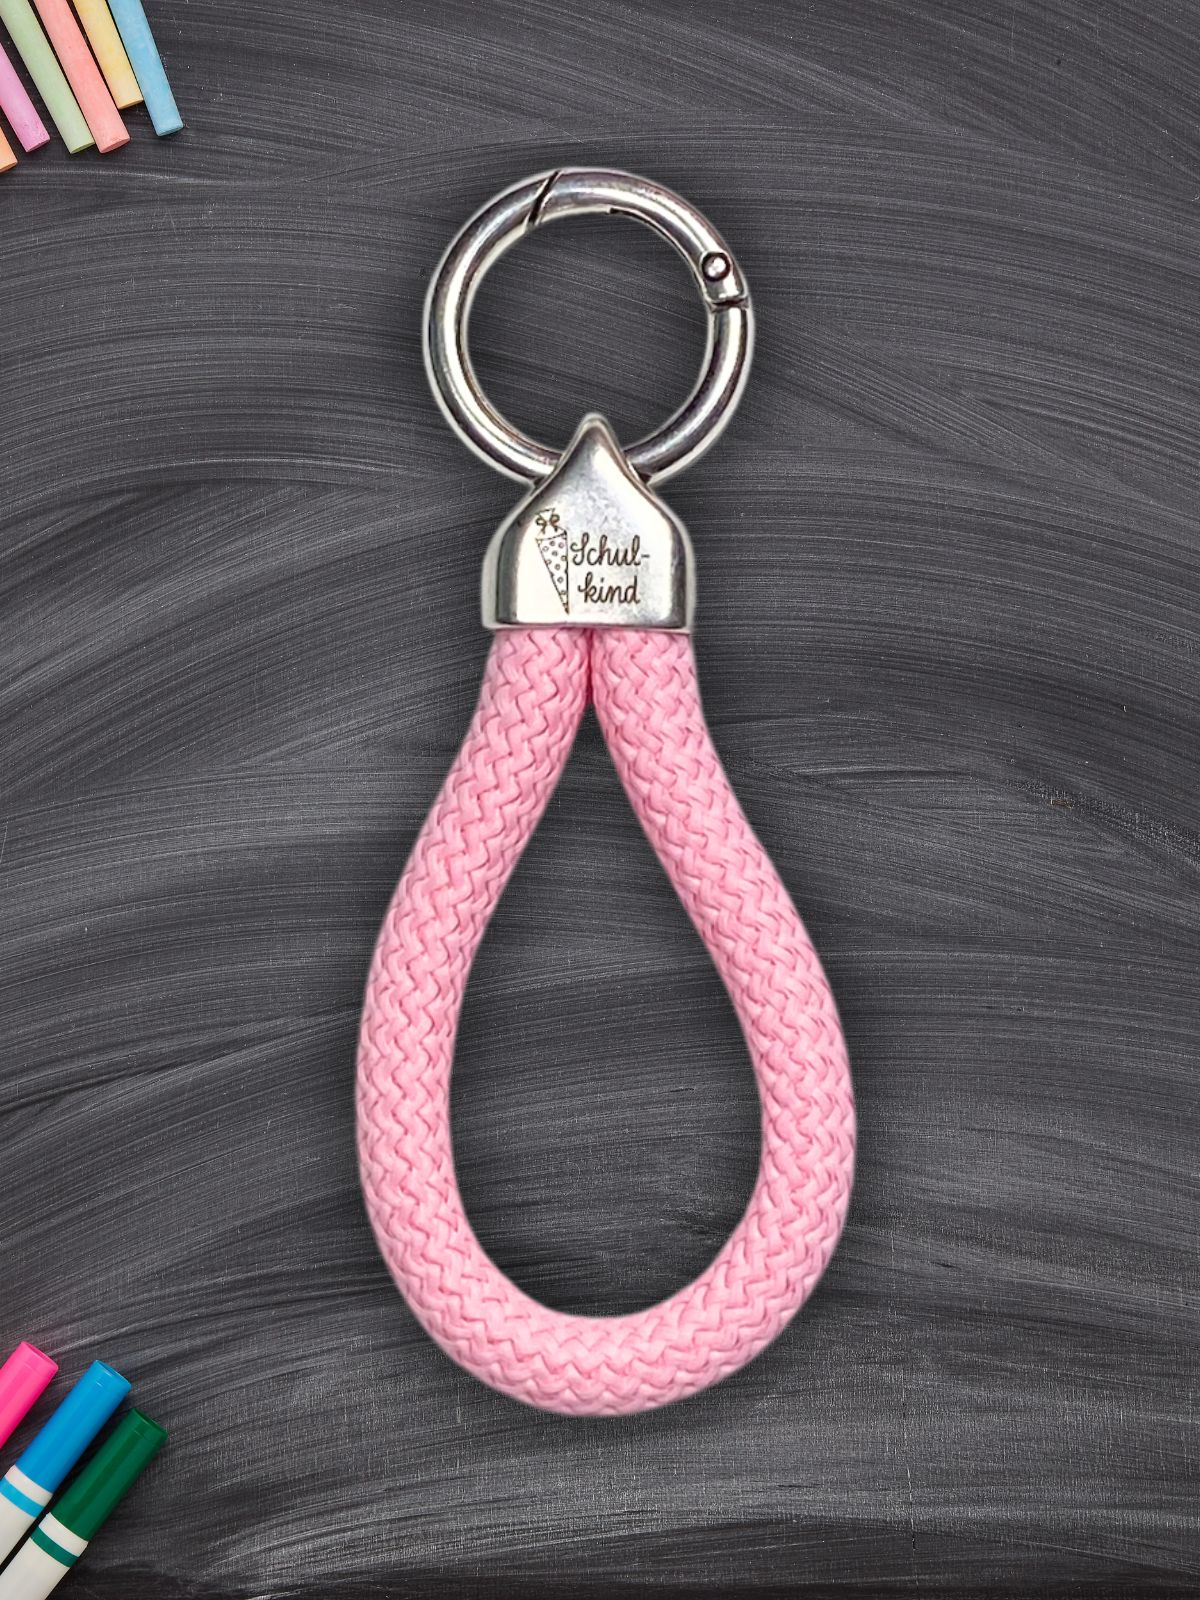 Schlüsselanhänger "Schulkind" aus Segeltau - rosa